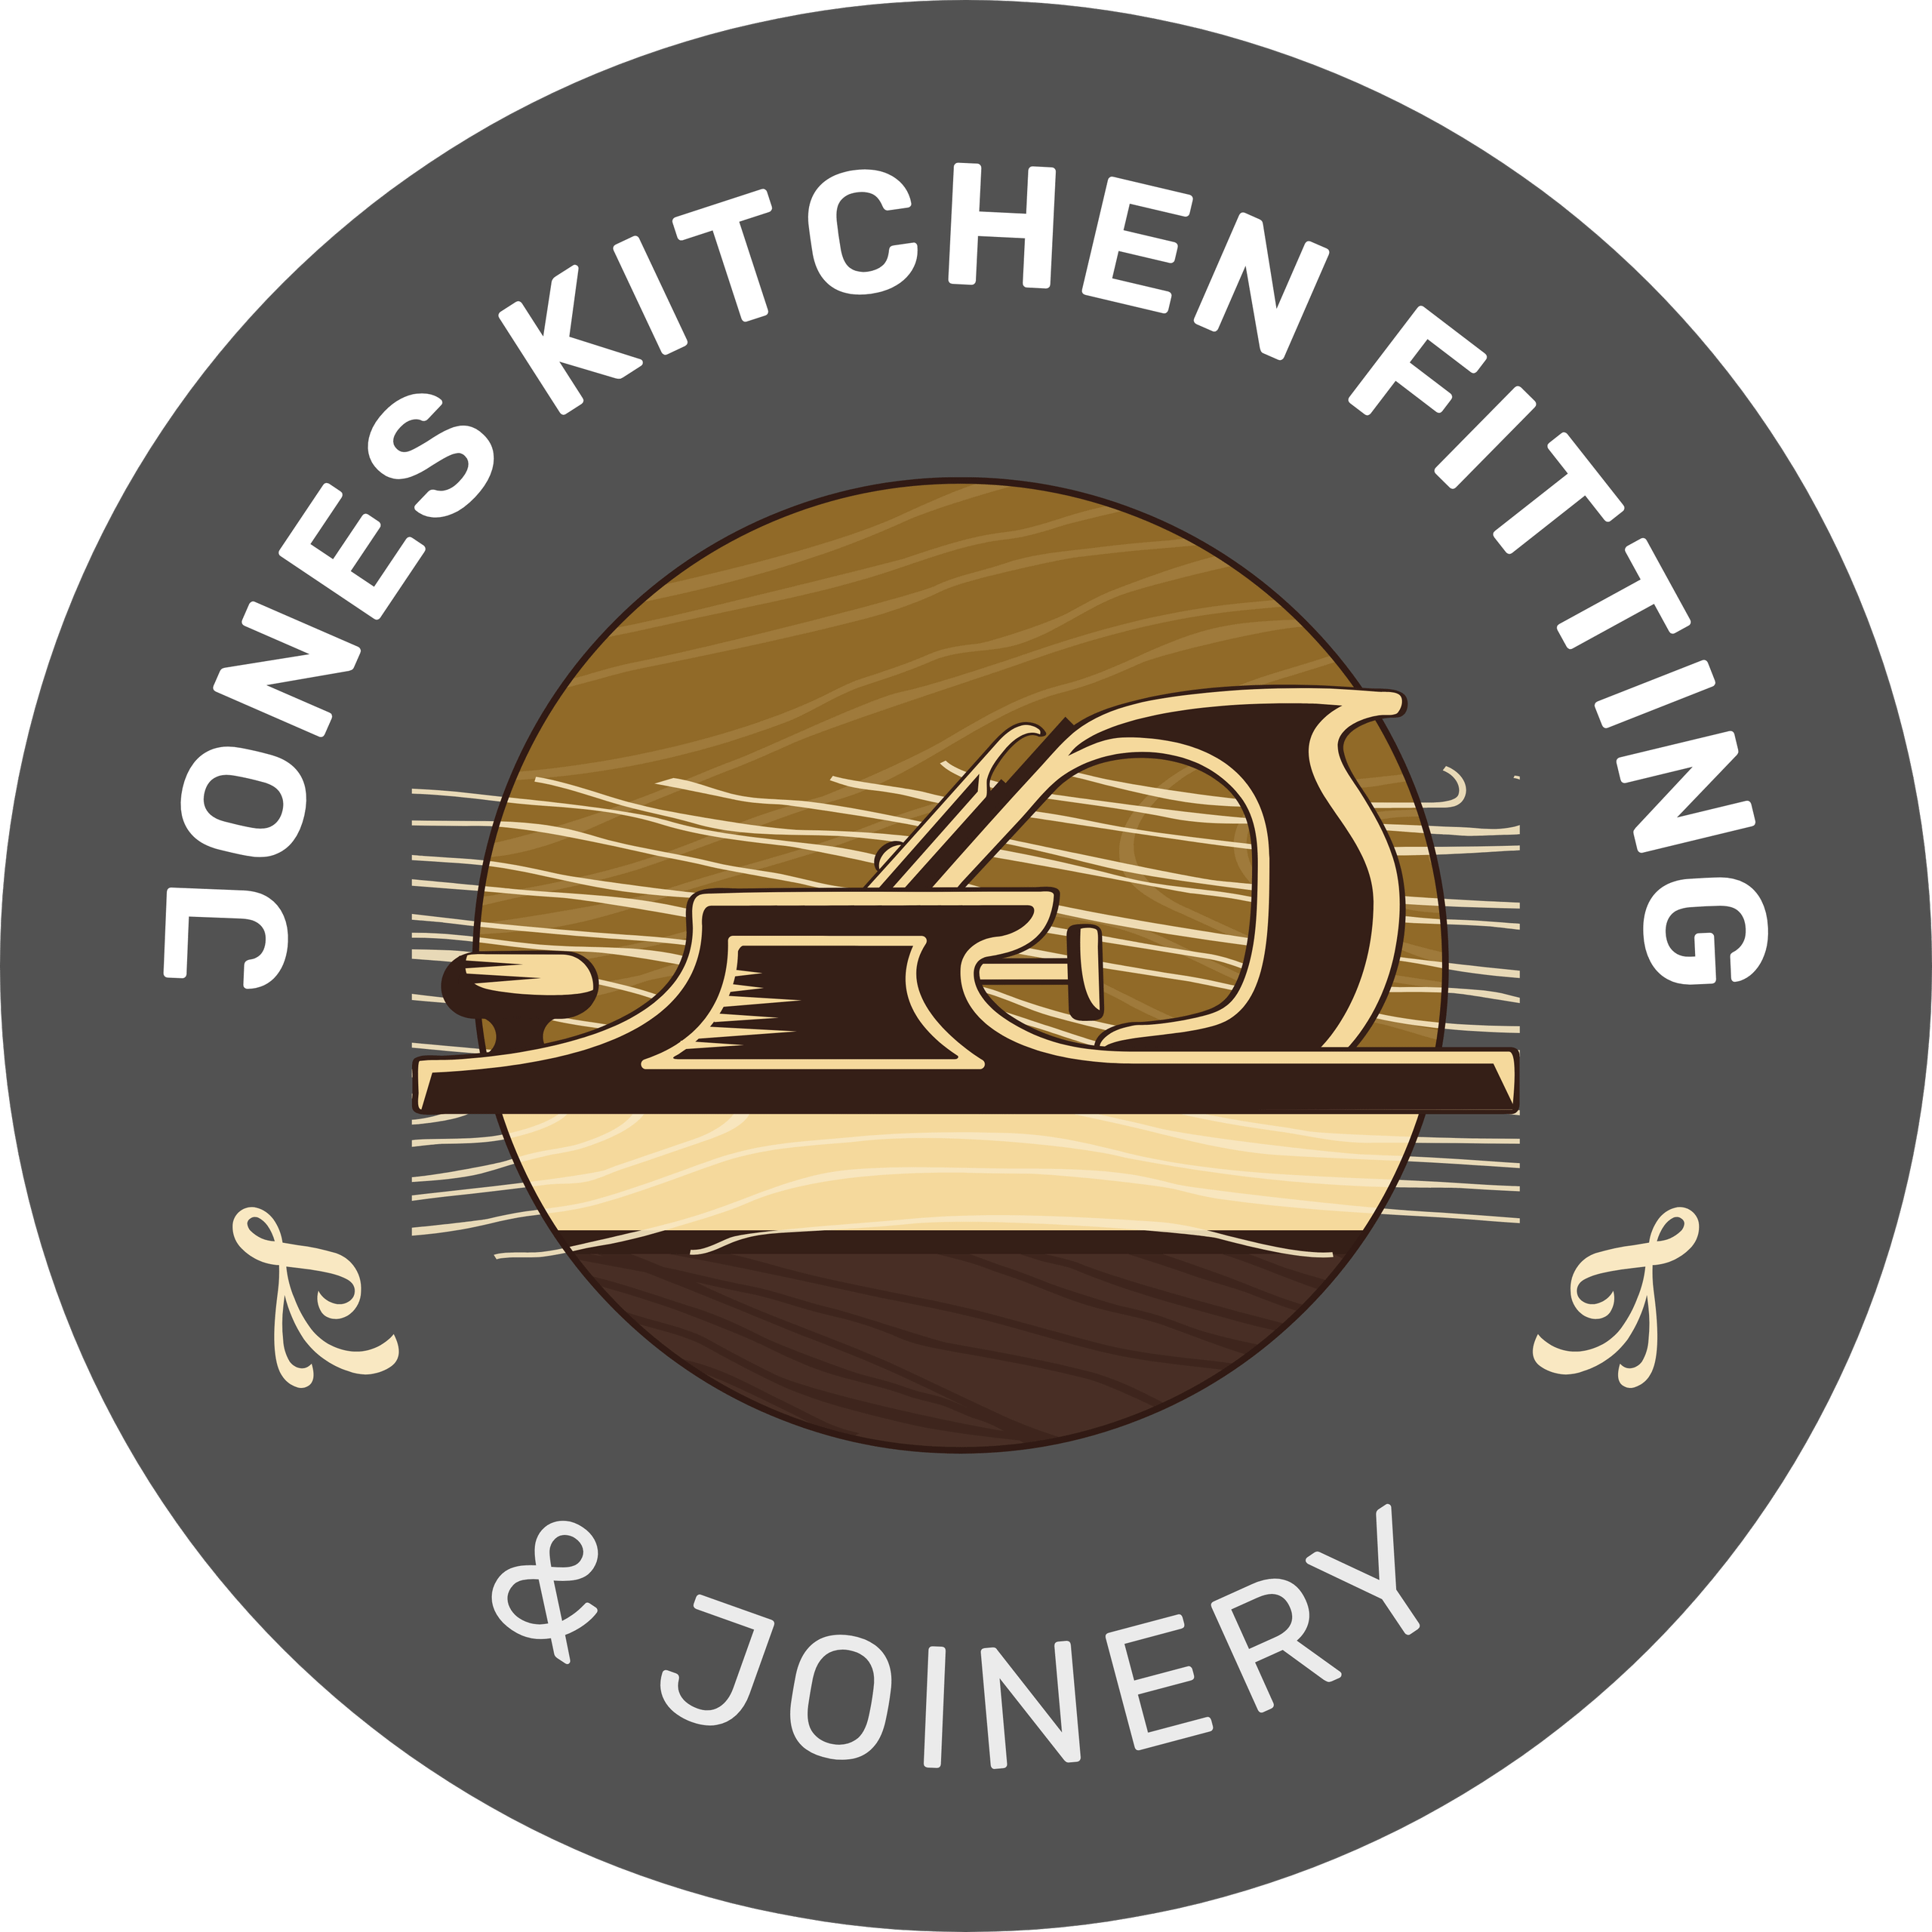 Joneskitchenfitting&joinery